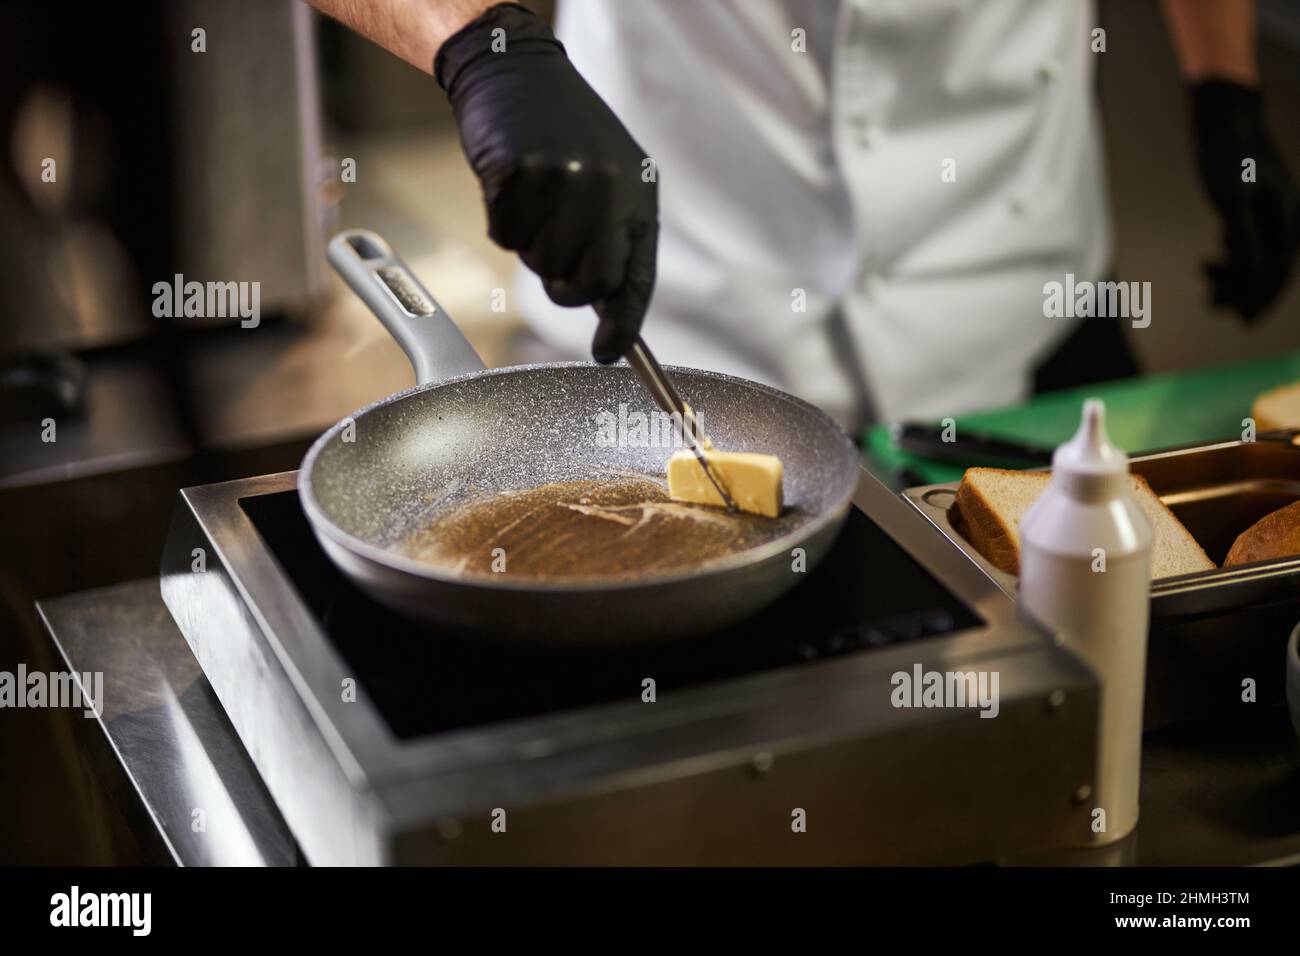 Crope vista de las manos del chef en guantes negros derretir pedazo de  mantequilla en sartén. Hombre con uniforme de chef usando pinzas para  cocinar con ingredientes y equipo sobre fondo. Concepto